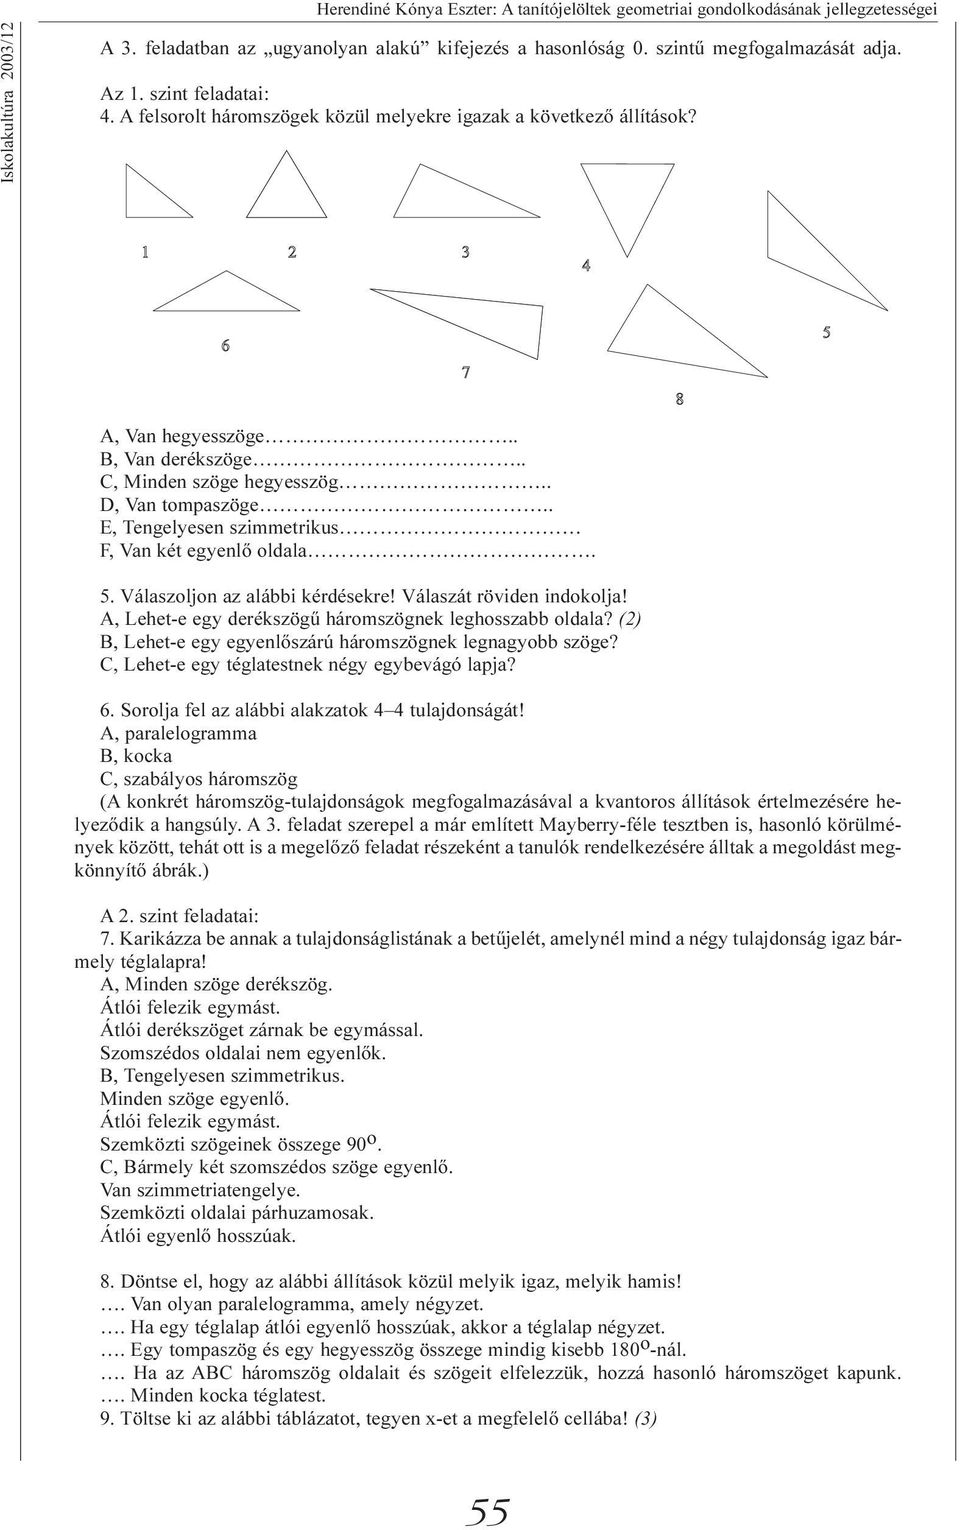 . E, Tengelyesen szimmetrikus F, Van két egyenlõ oldala. 5. Válaszoljon az alábbi kérdésekre! Válaszát röviden indokolja! A, Lehet-e egy derékszögû háromszögnek leghosszabb oldala?